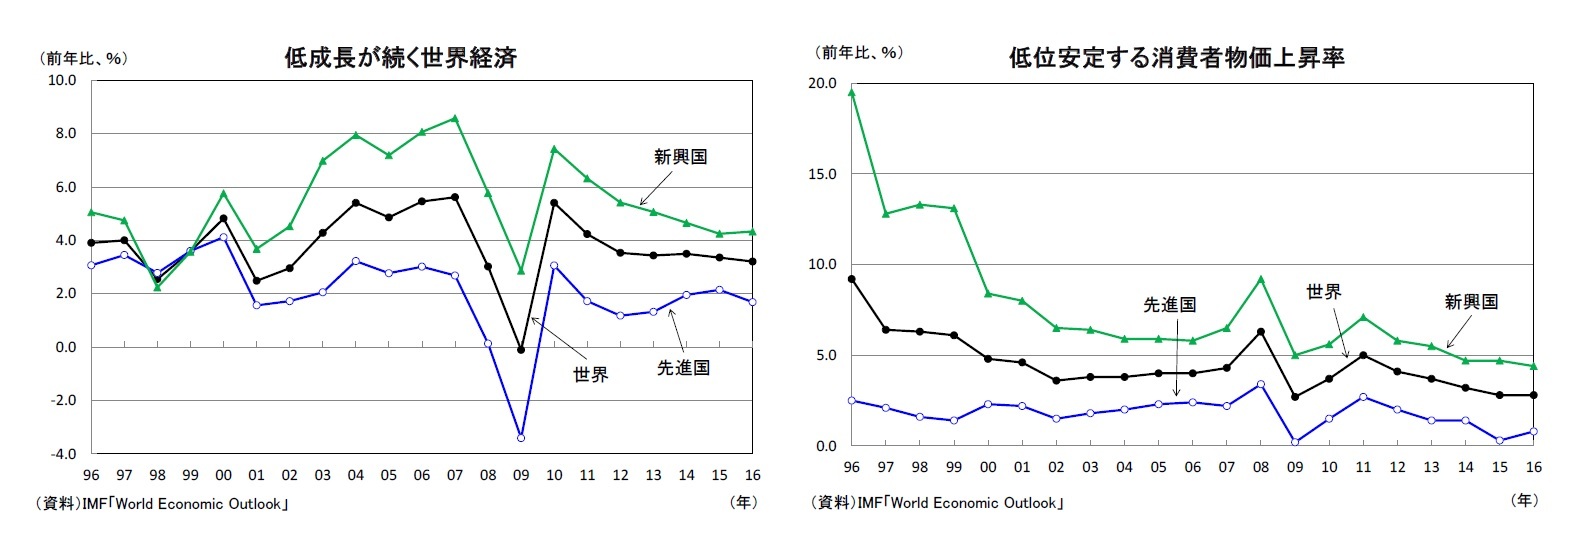 低成長が続く世界経済/低位安定する消費者物価上昇率